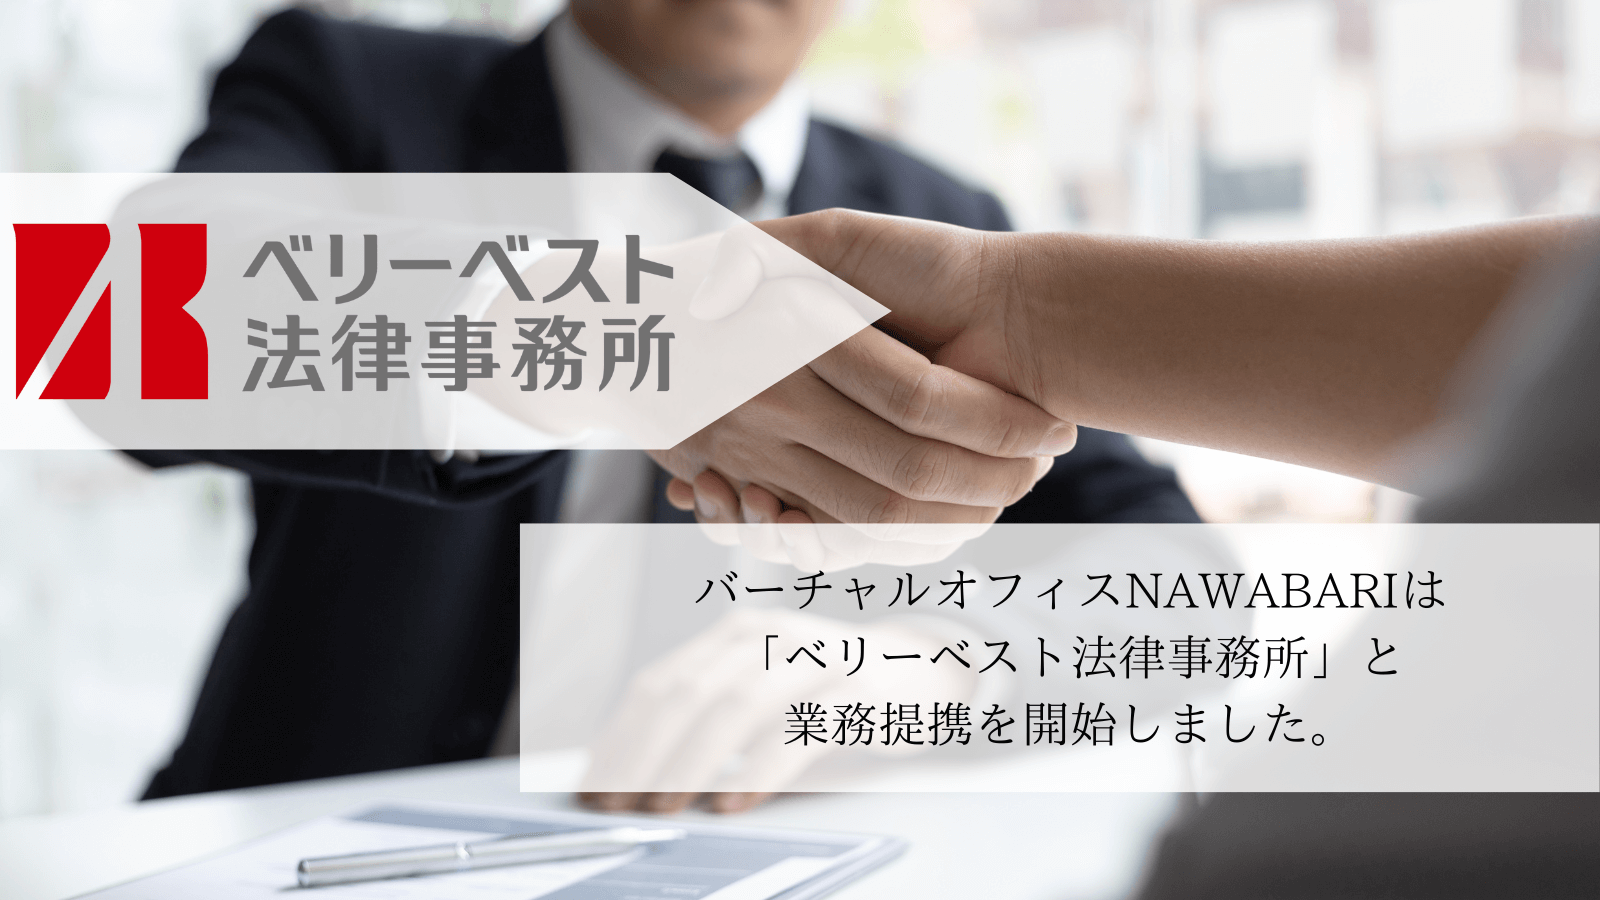 NAWABARIはベリーベスト法律事務所と業務提携を開始しました。